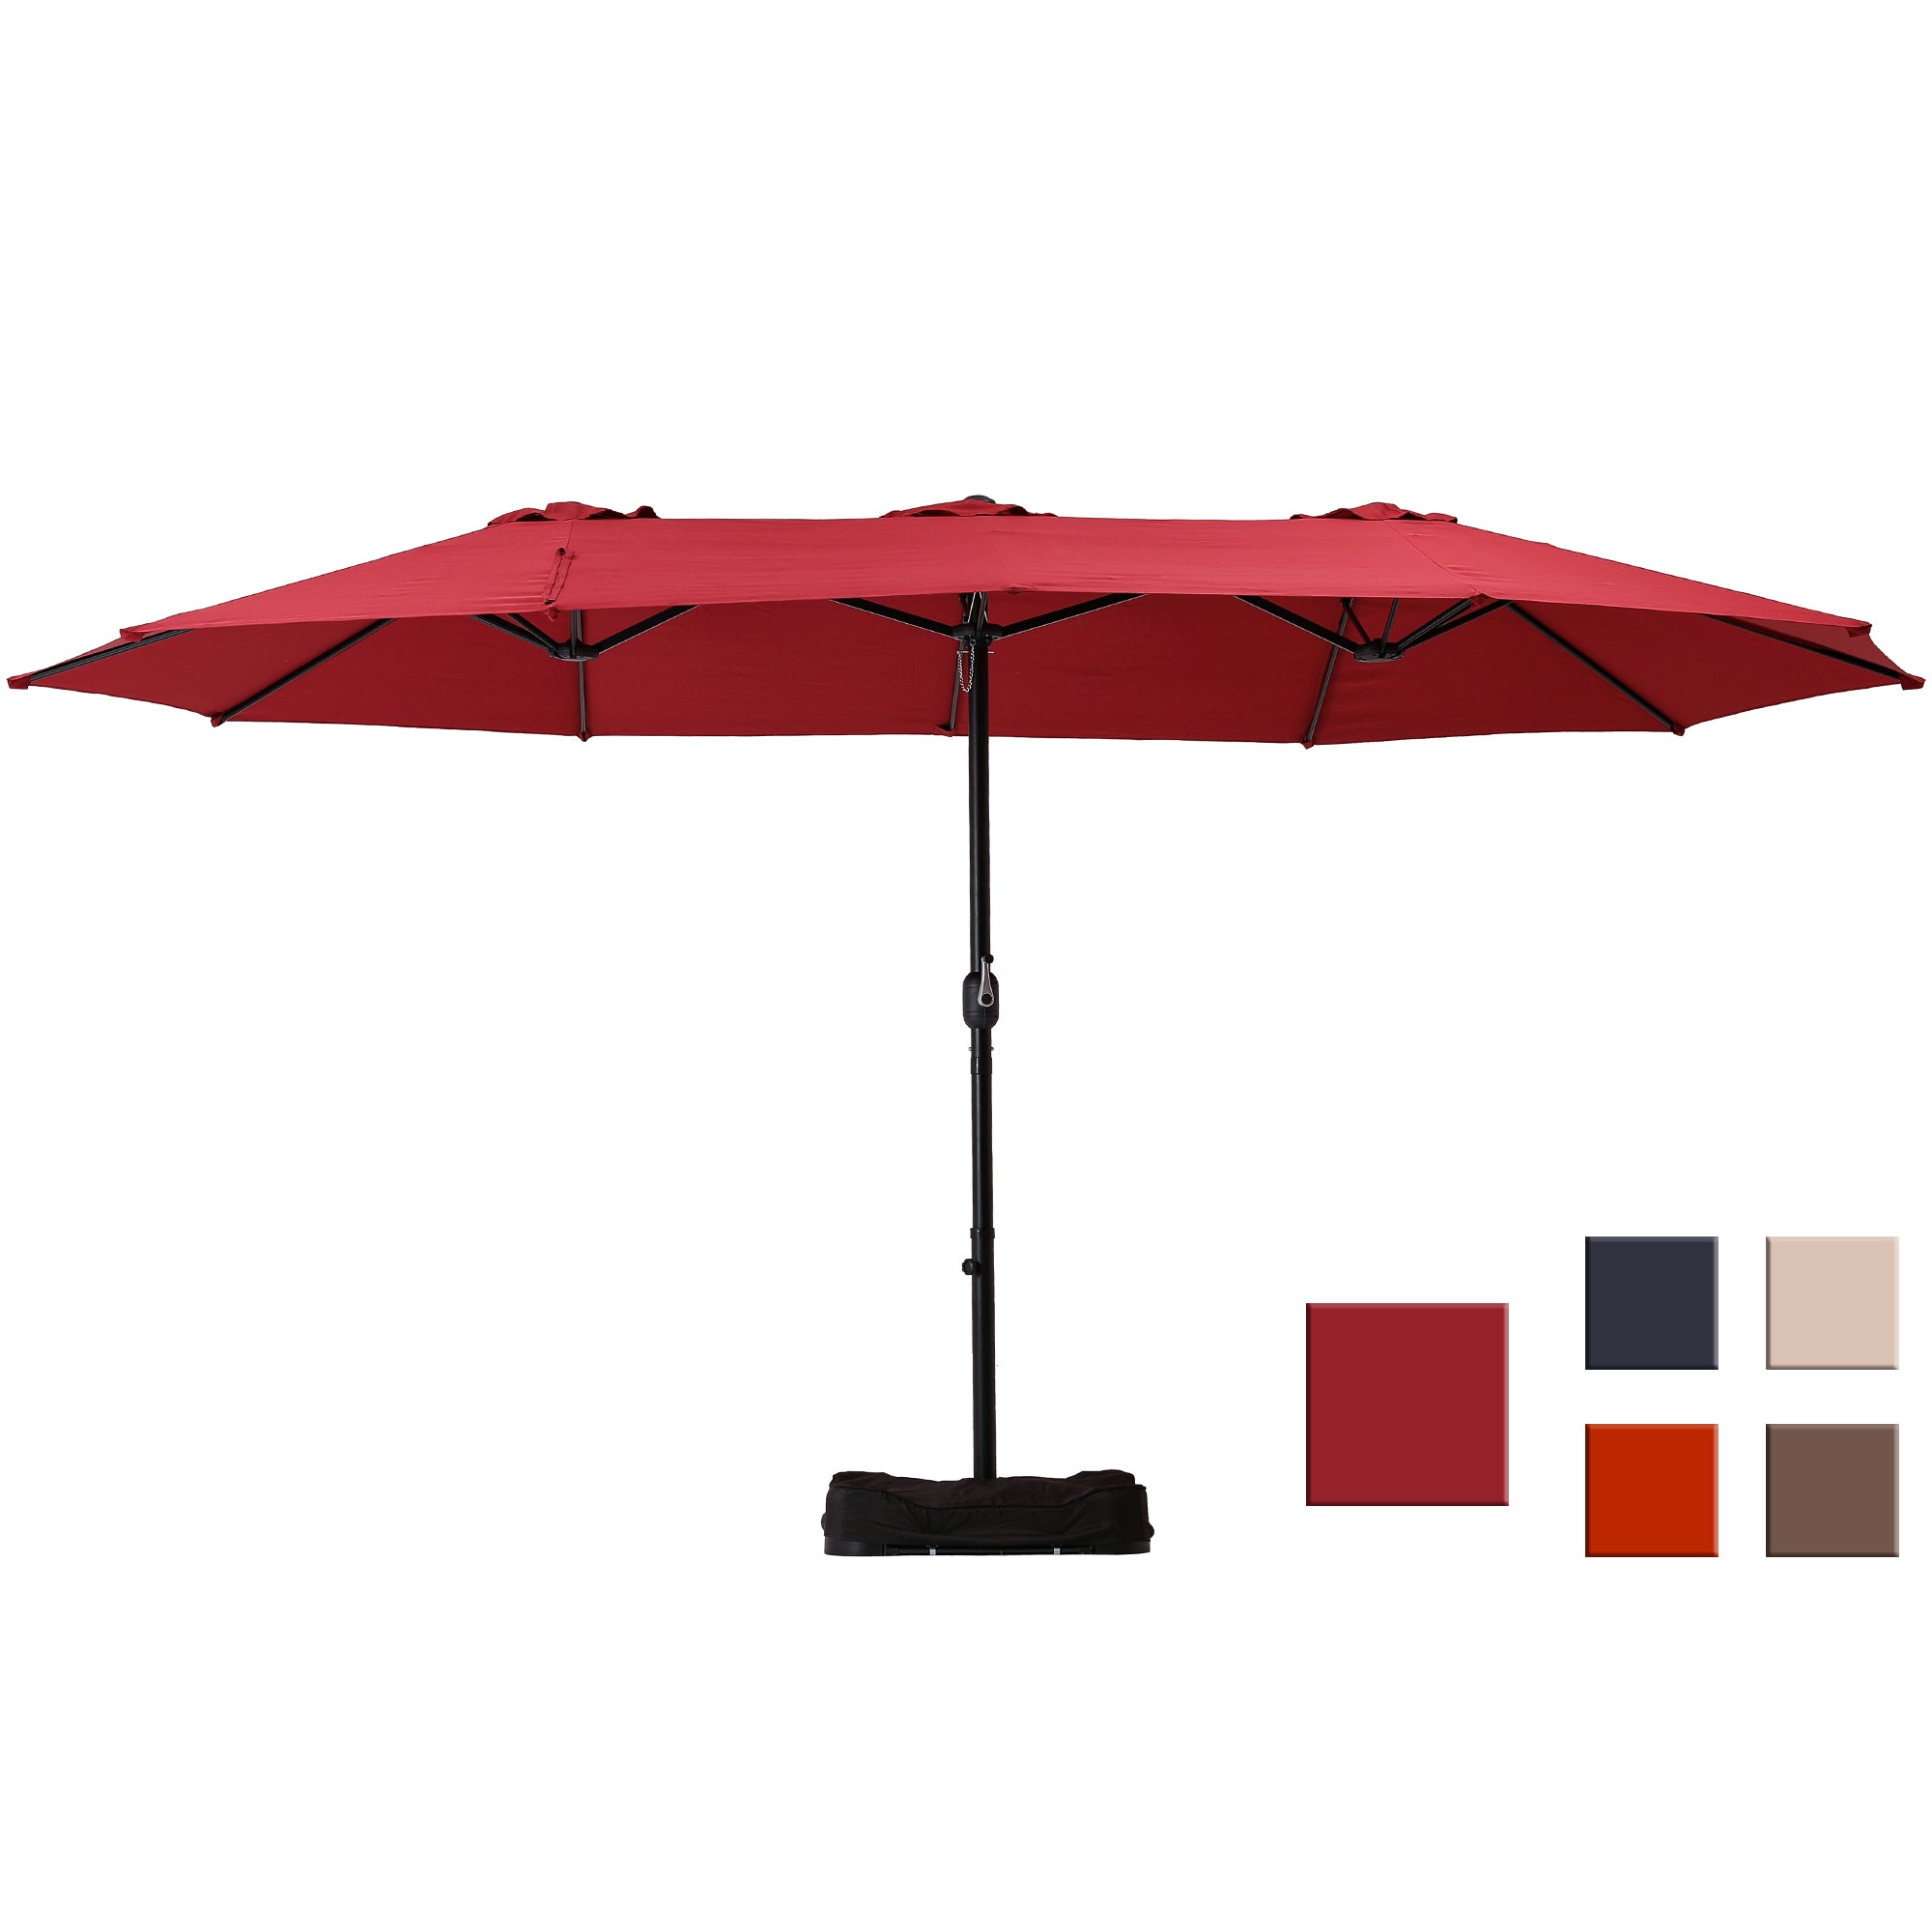 15ft Outdoor Patio Market Umbrella with Base, Umbrella for Pool, Garden-Boyel Living